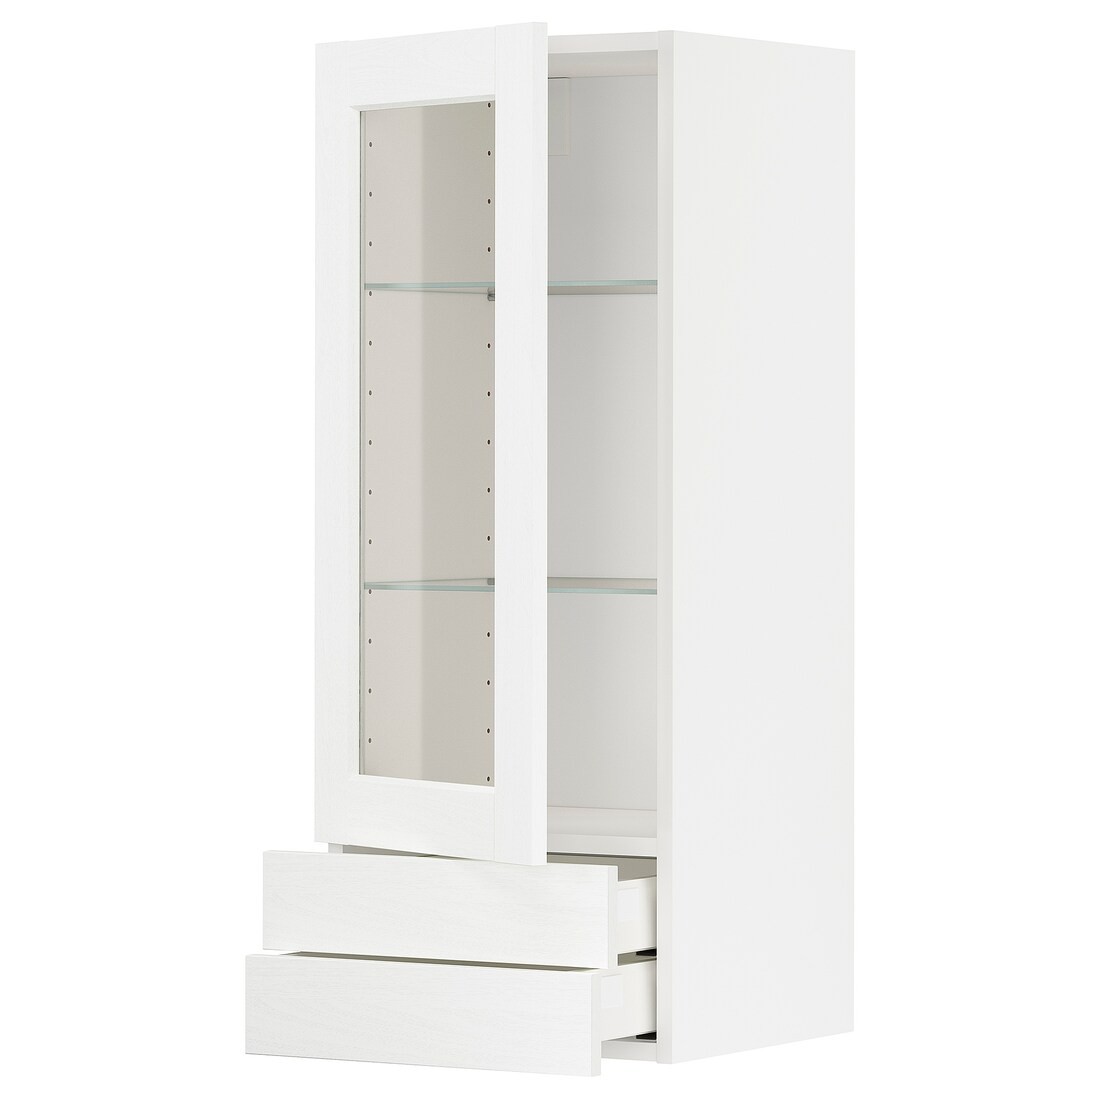 METOD МЕТОД / MAXIMERA МАКСИМЕРА Навесной шкаф / 1 стеклянная дверь / 2 ящика, белый Enköping / белый имитация дерева, 40x100 см